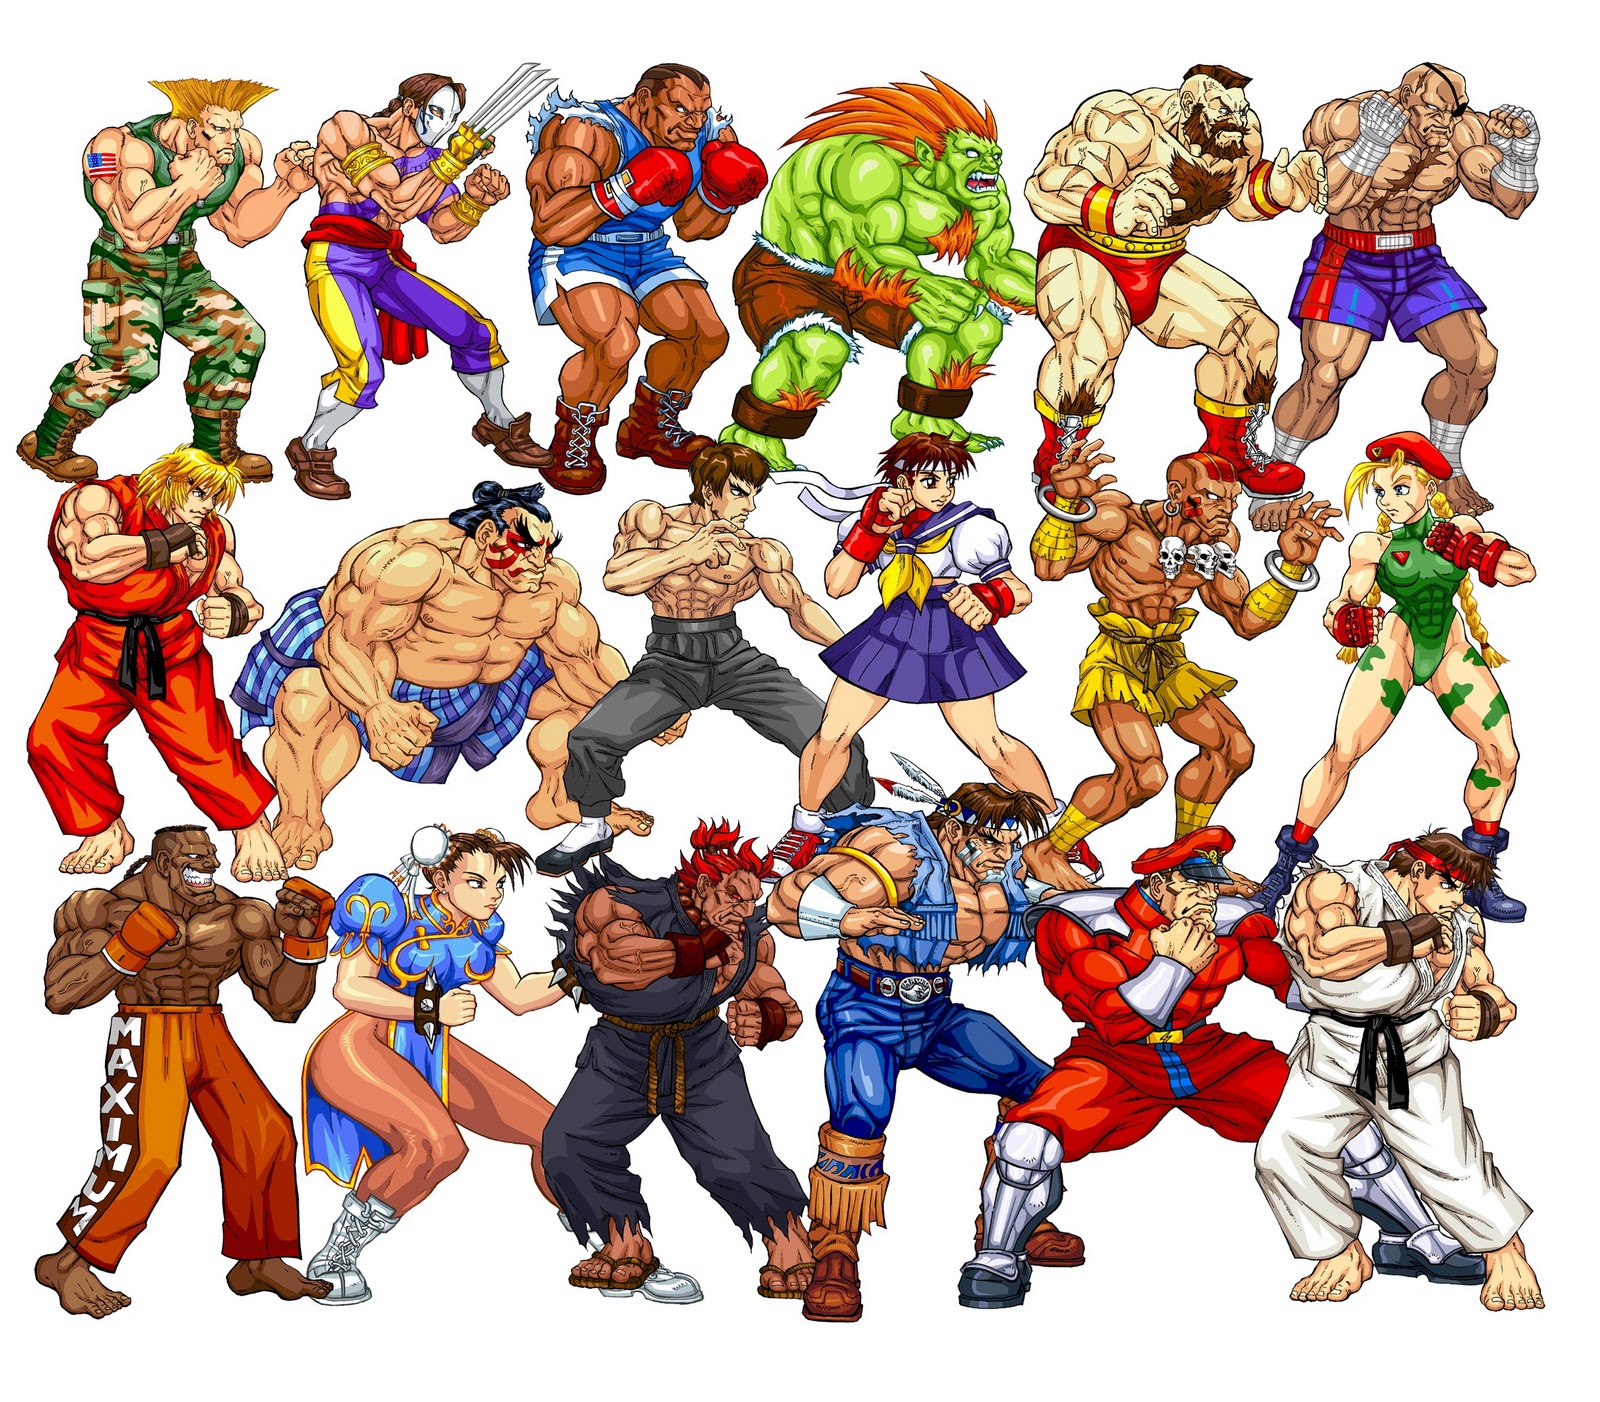 Street Fighter: a trajetória de um dos jogos de luta mais famosos